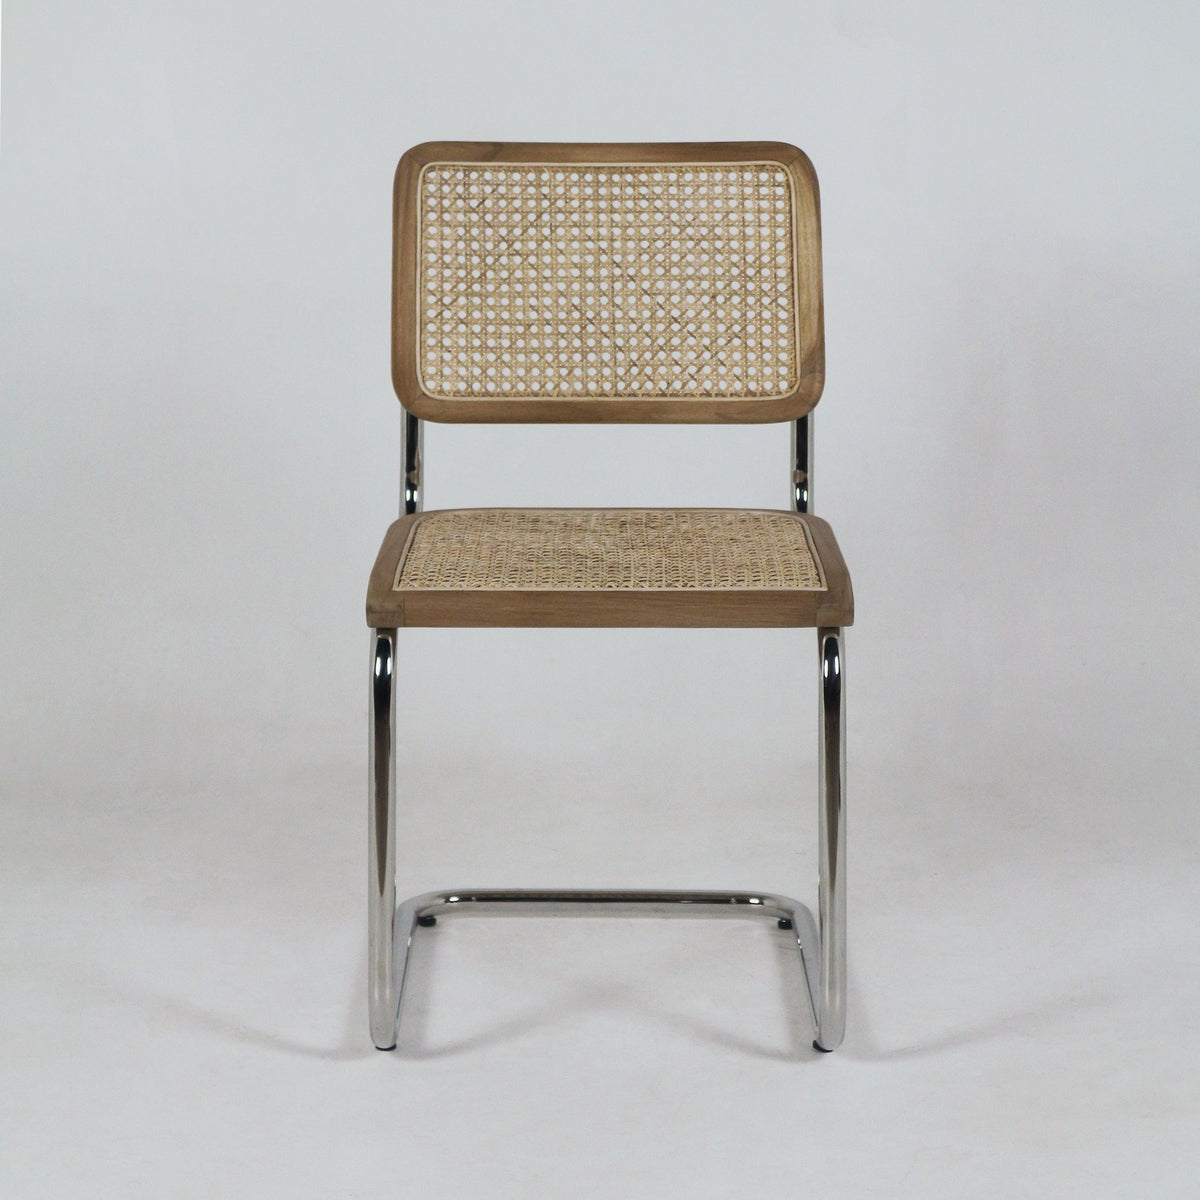 Teak Rattan &amp; Aluminium Dining Chair - INTERIORTONIC